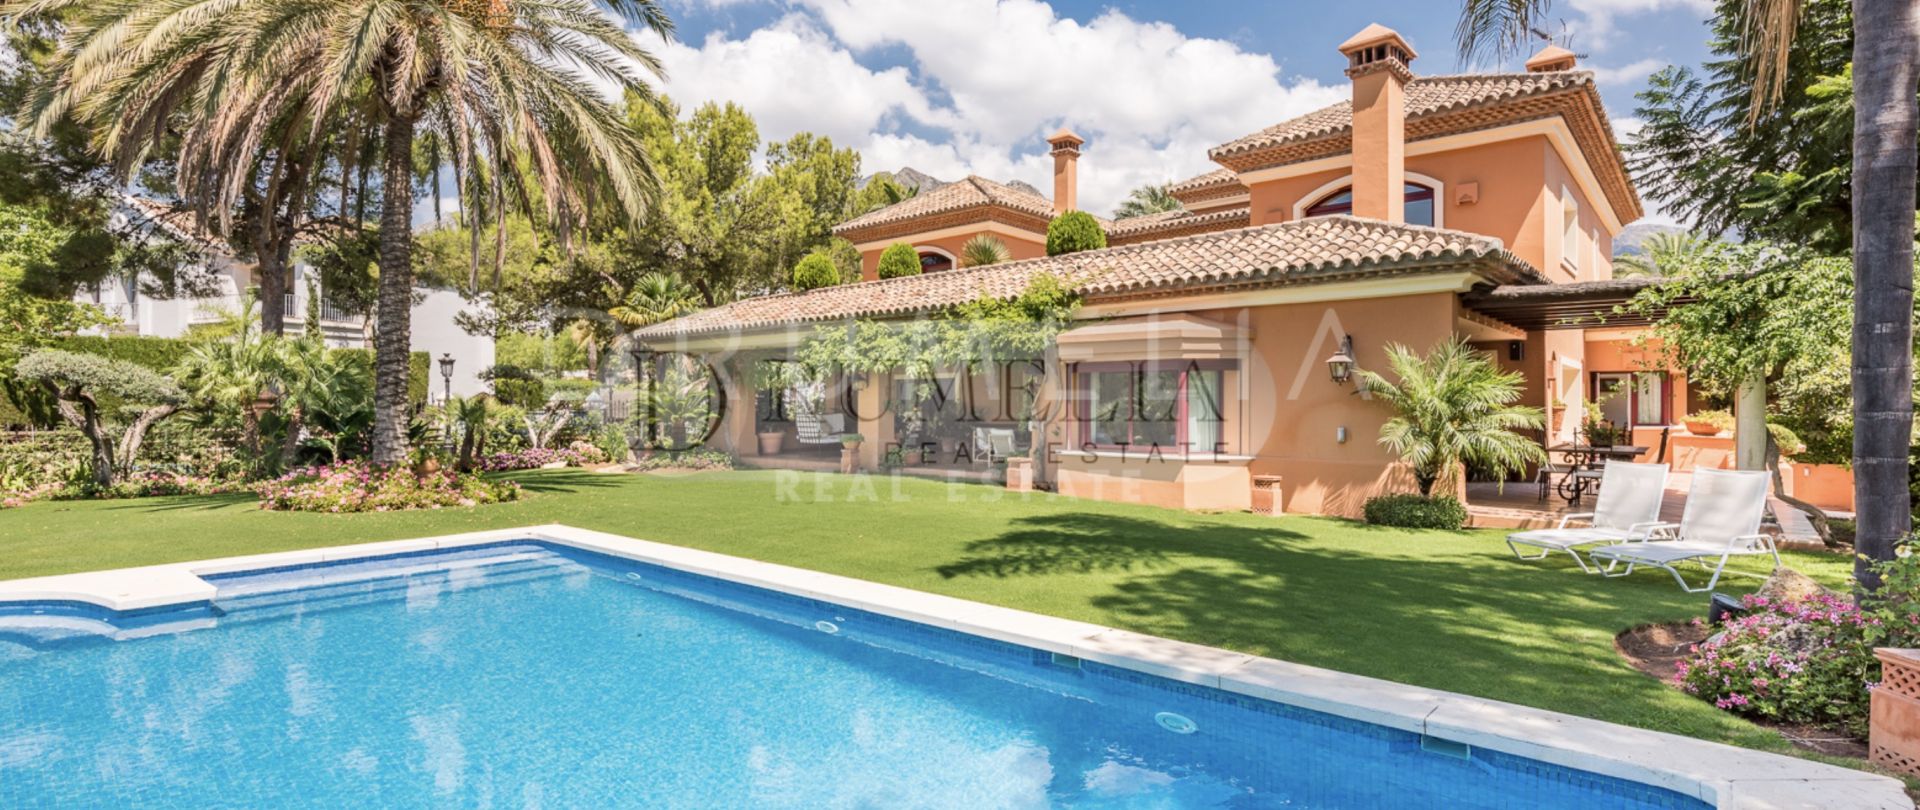 Delightful classy, Mediterranean-style luxury villa in Altos Reales, Golden Mile of Marbella